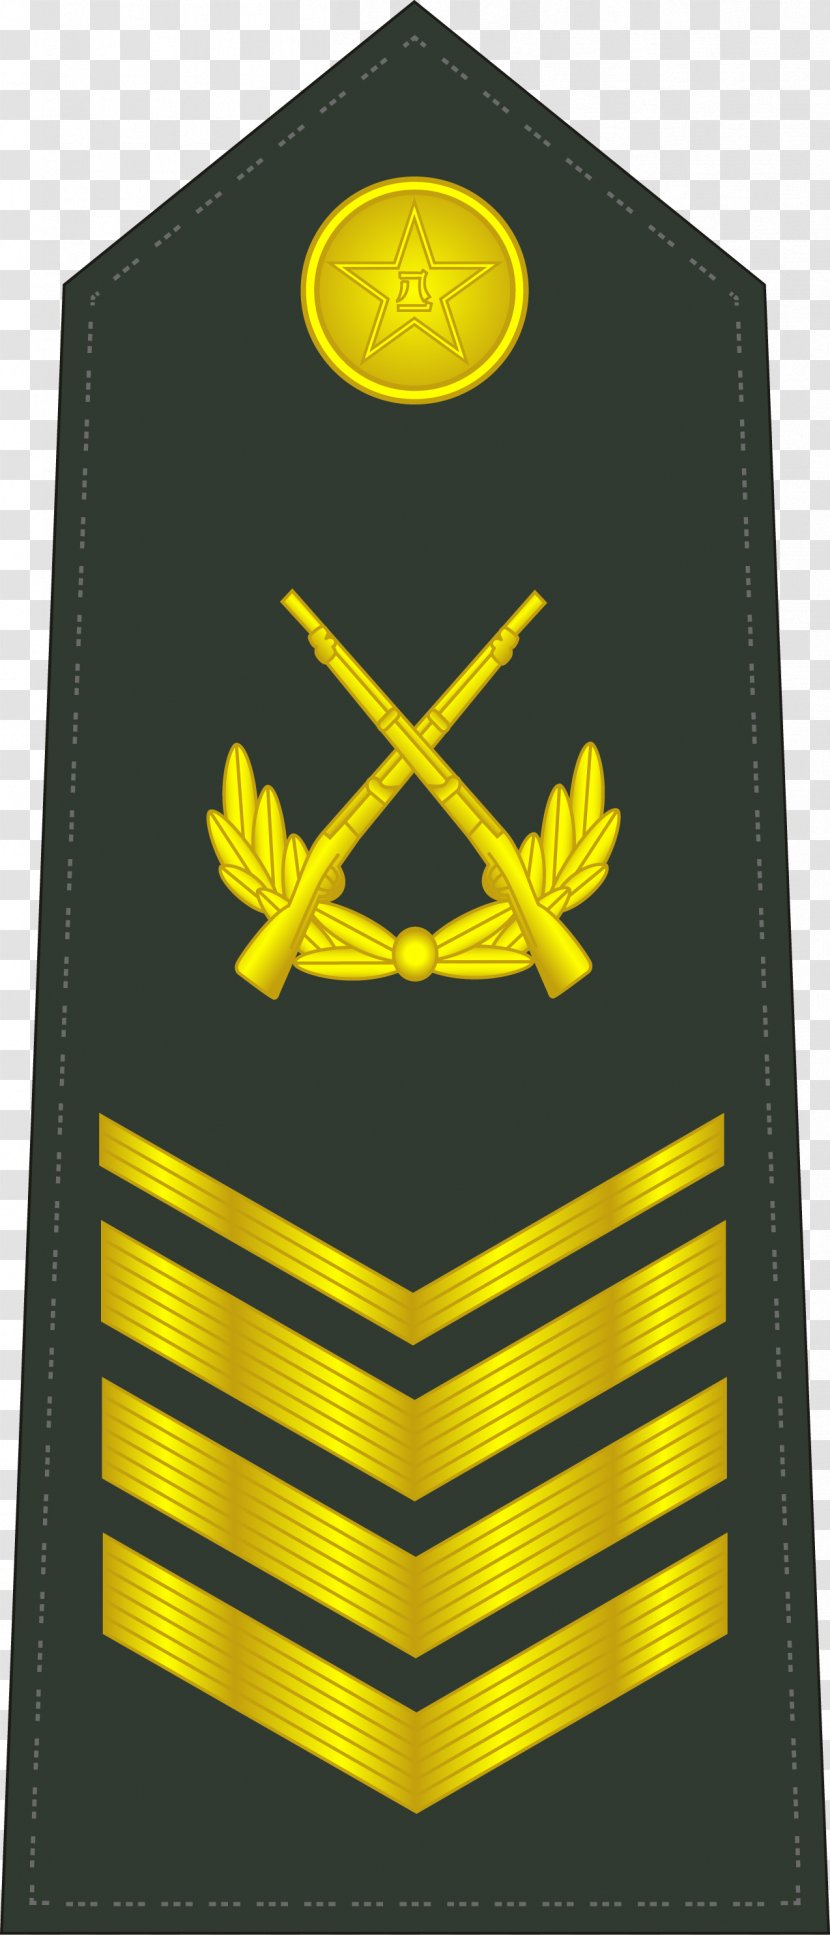 Military Rank Police Master Sergeant Shoulder Mark - Emblem Transparent PNG